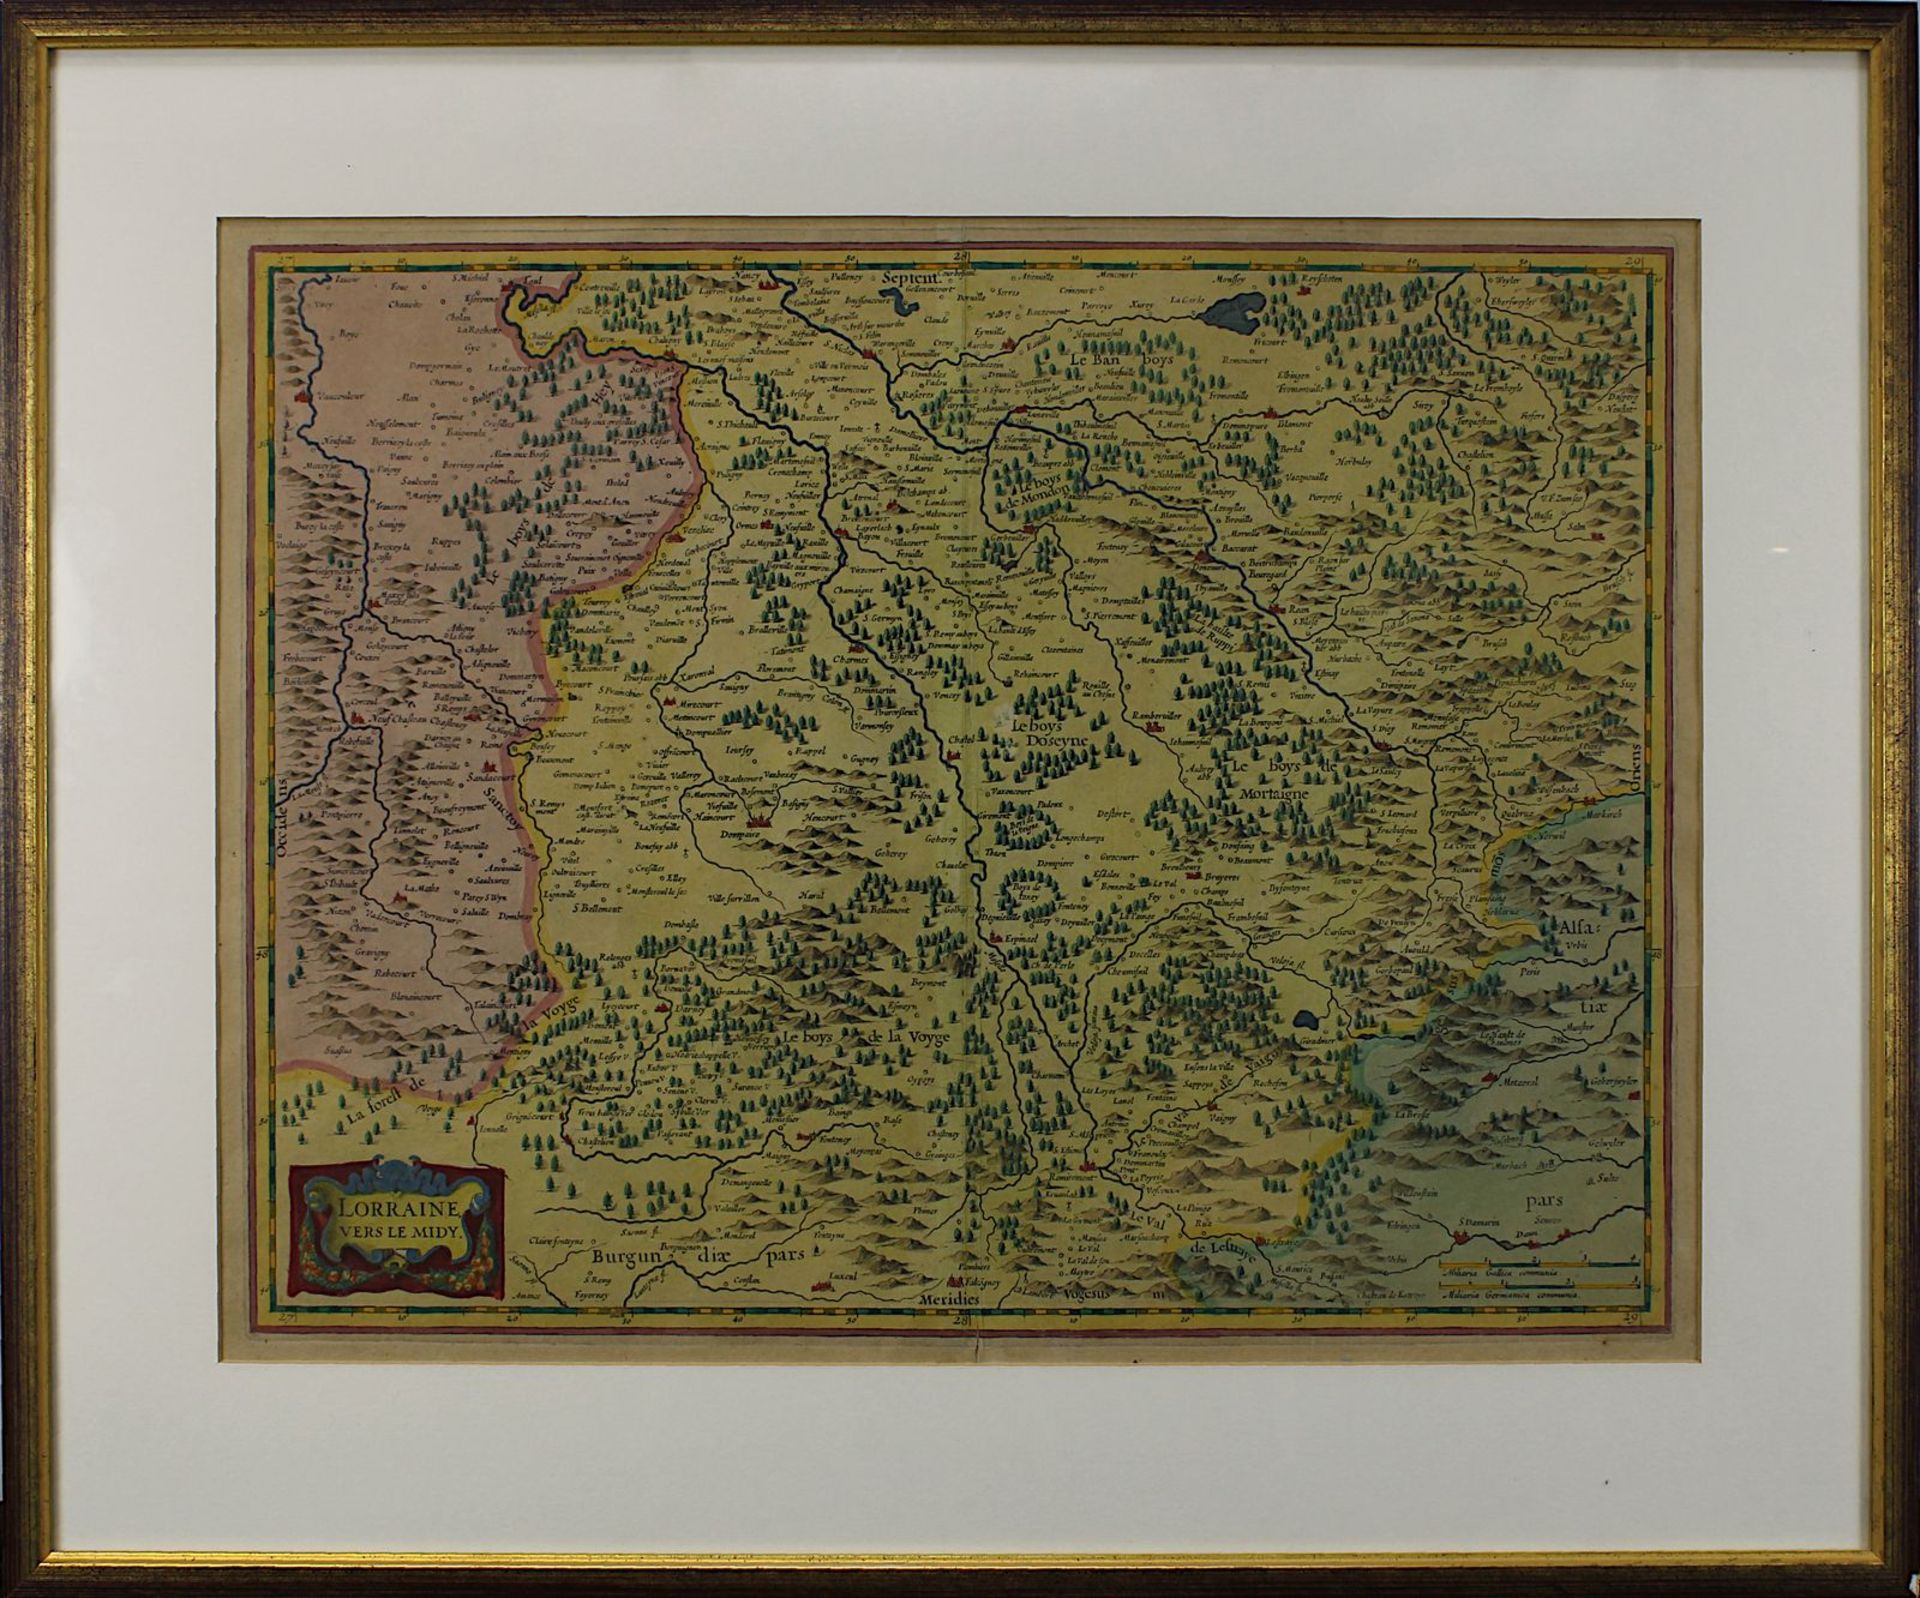 "Lorraine vers le midy", kolorierte Kupferstichkarte von Mercator-Hondius ca. 1635, zeit das